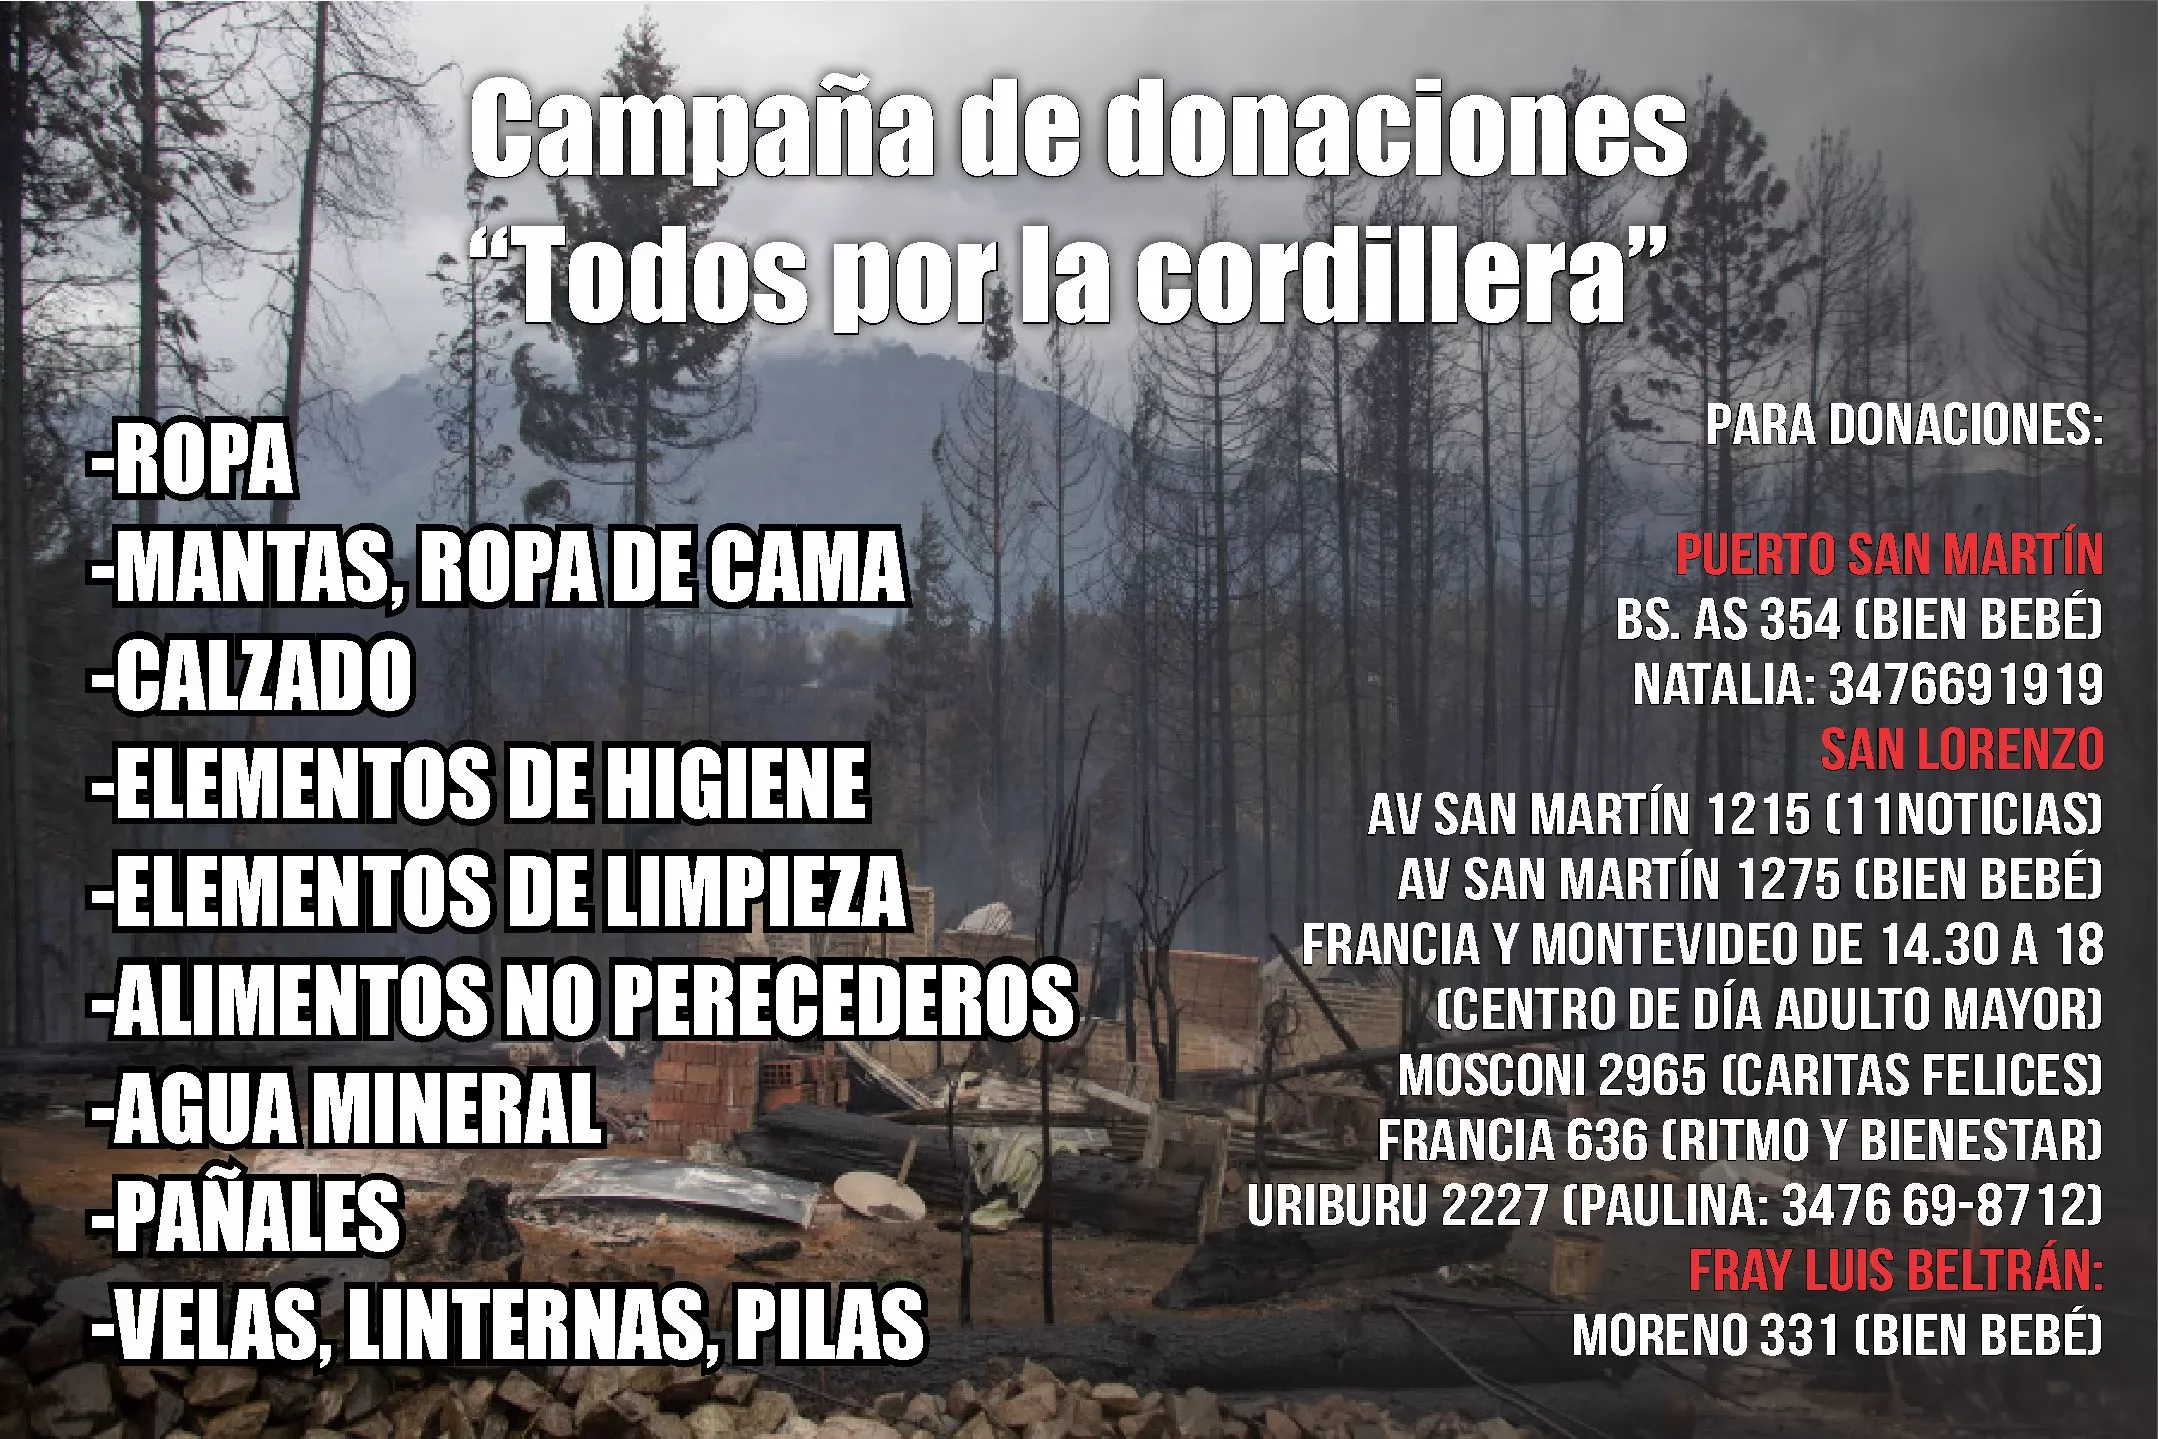 Campaña de donaciones en la región para ayudar a familias afectadas por los incendios en la patagonia